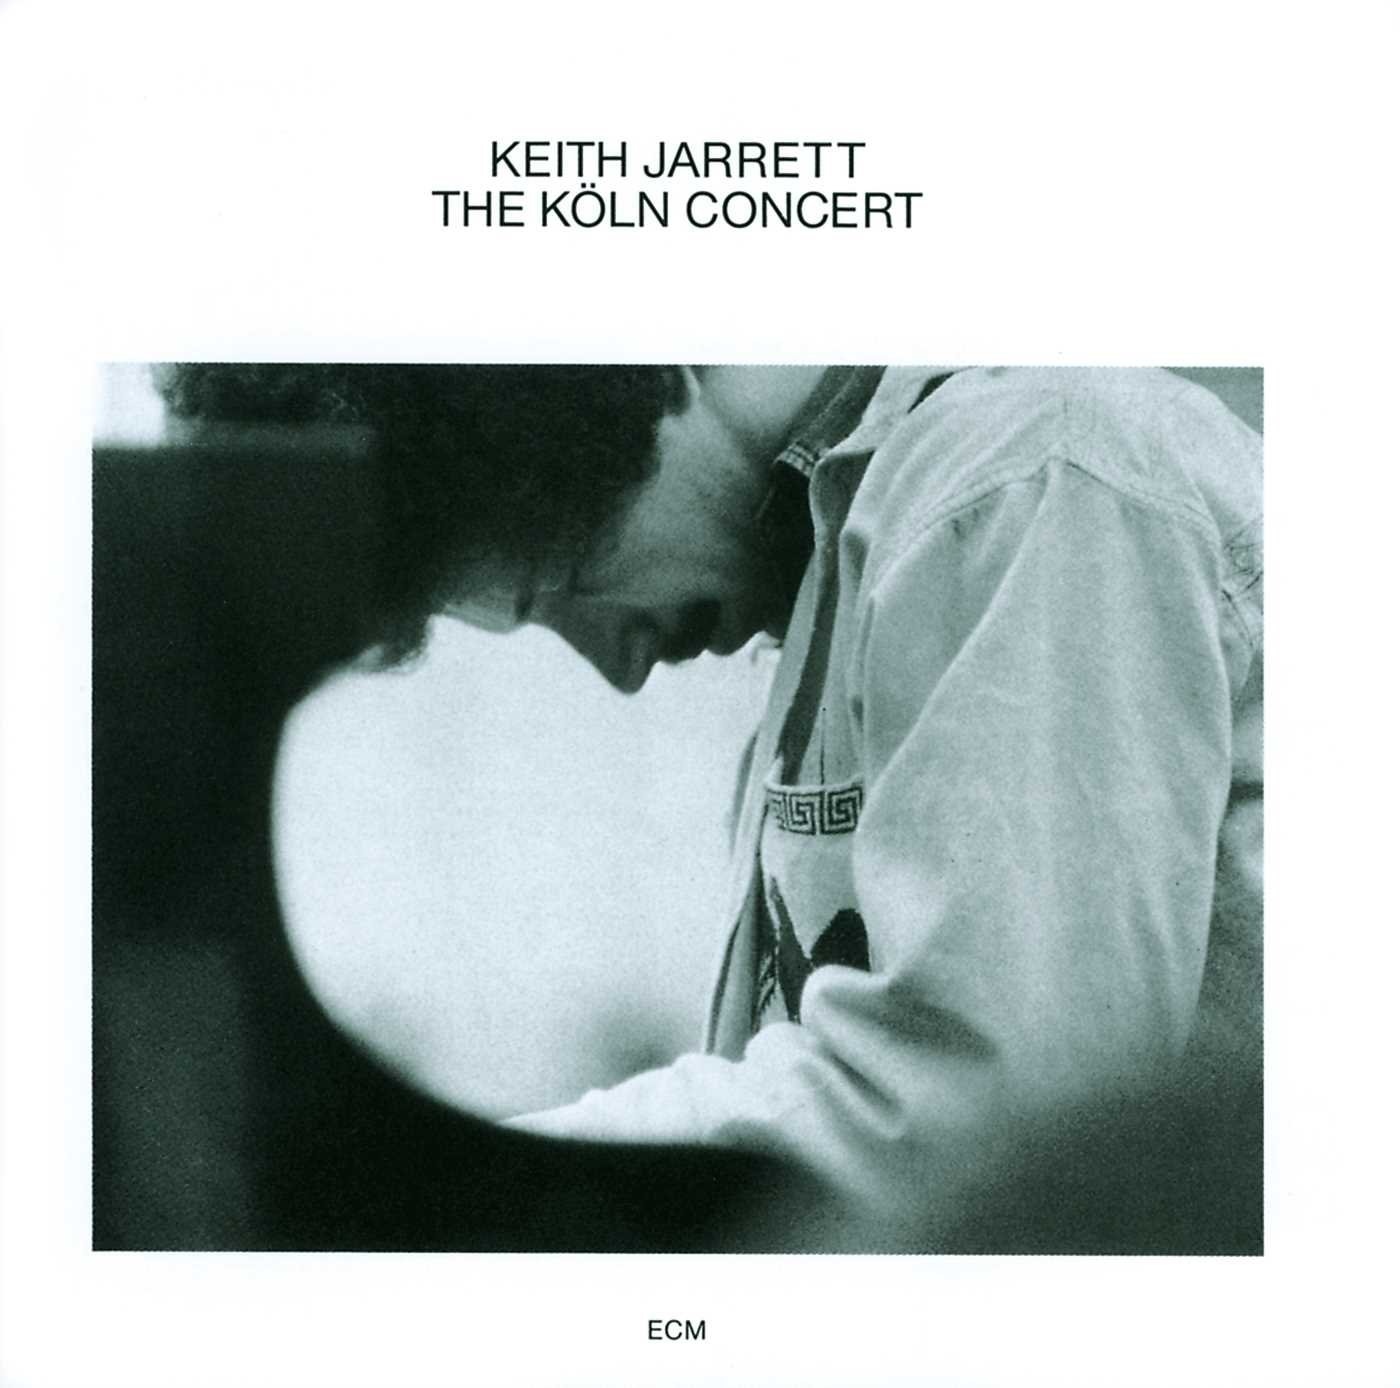 Köln Concert - Keith Jarrett